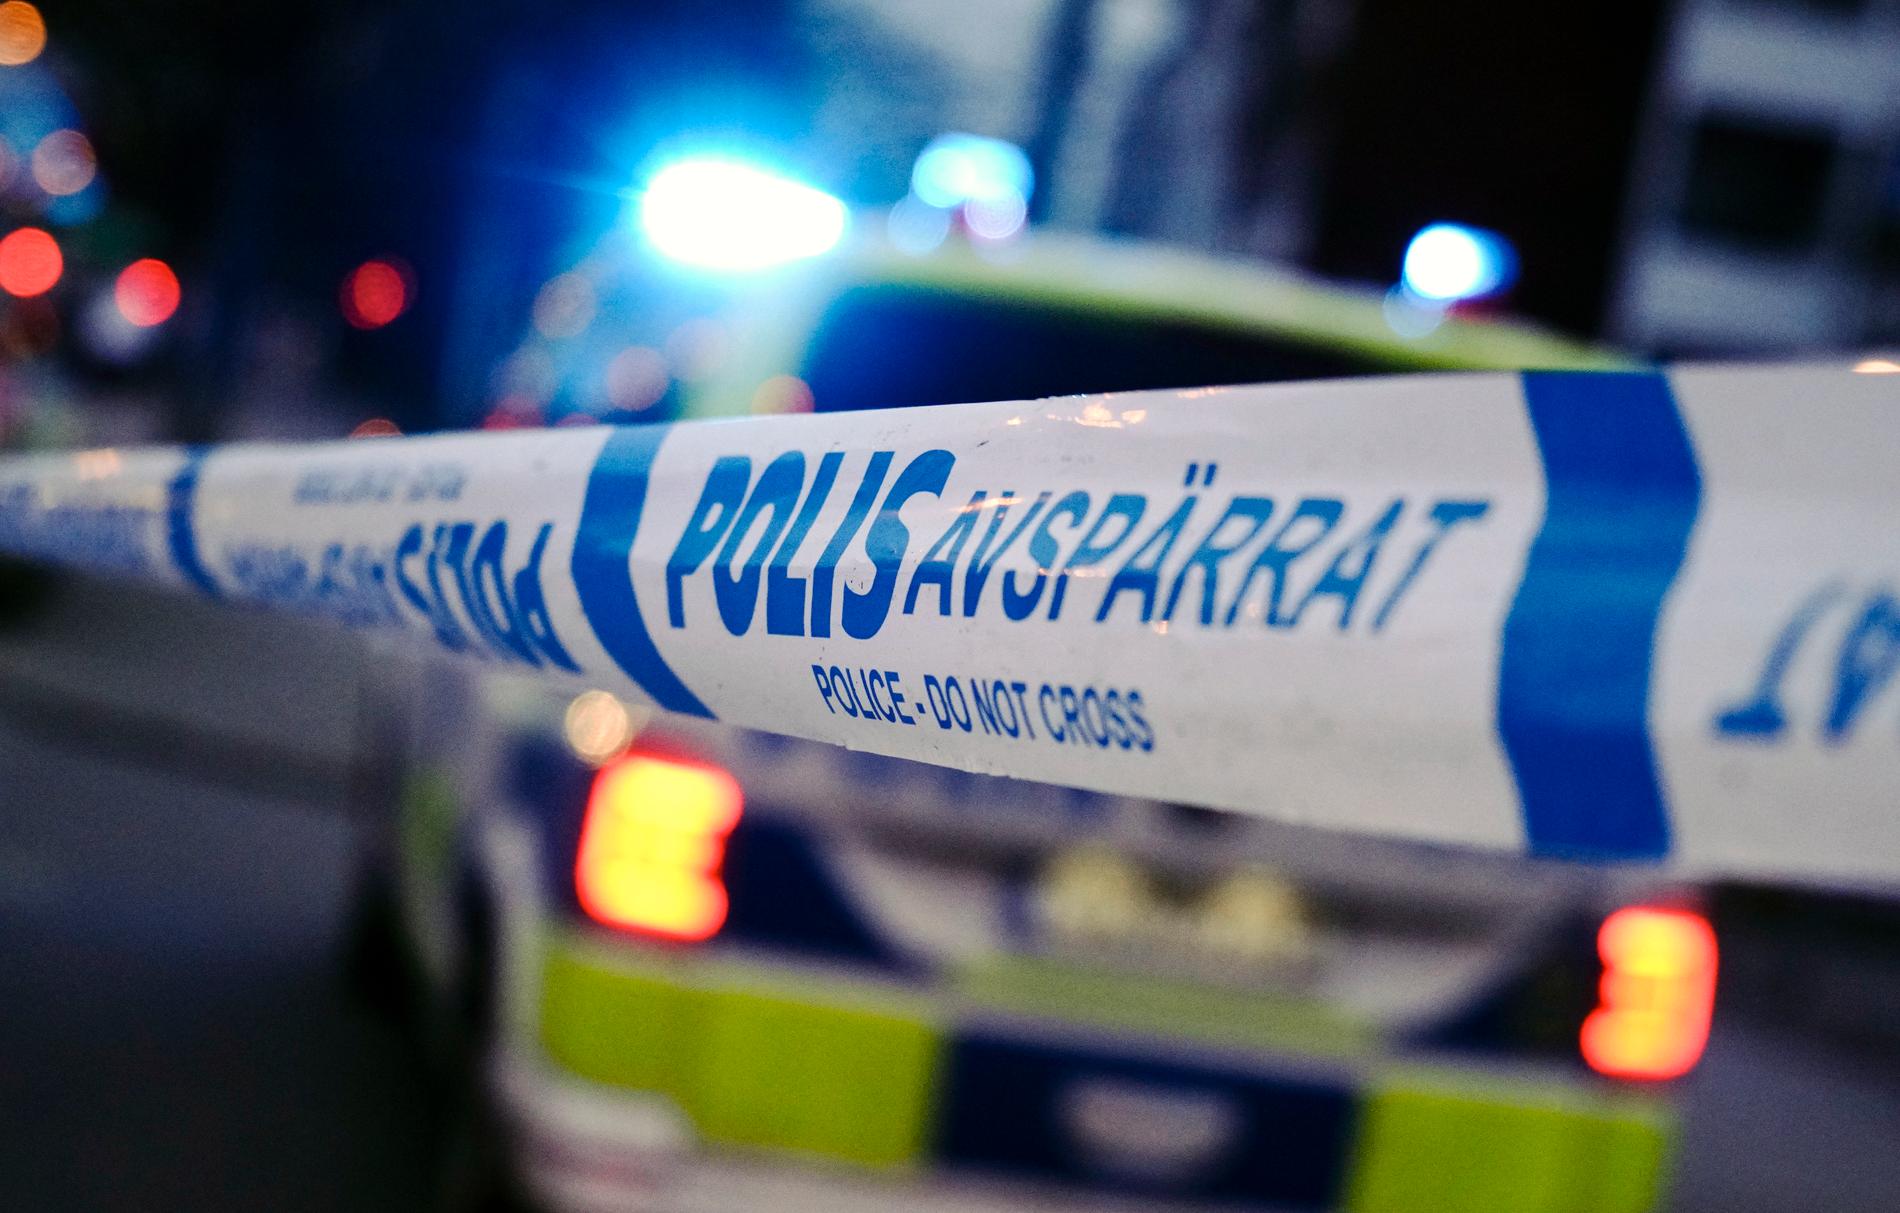 En man i 40-årsåldern har anhållits efter misstänkt våldsbrott i Gävle. Arkivbild.